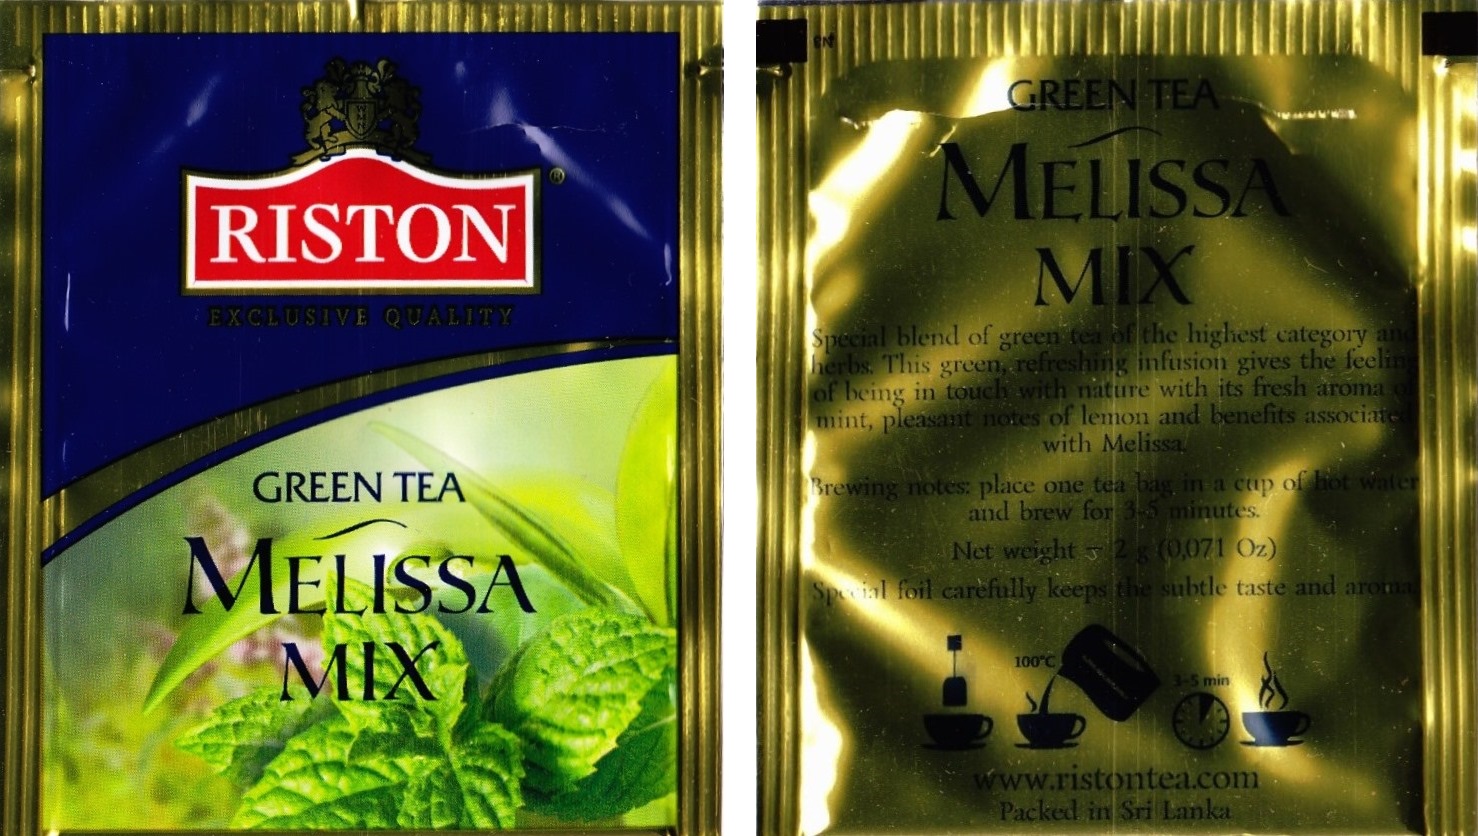 Riston - Melissa Mix